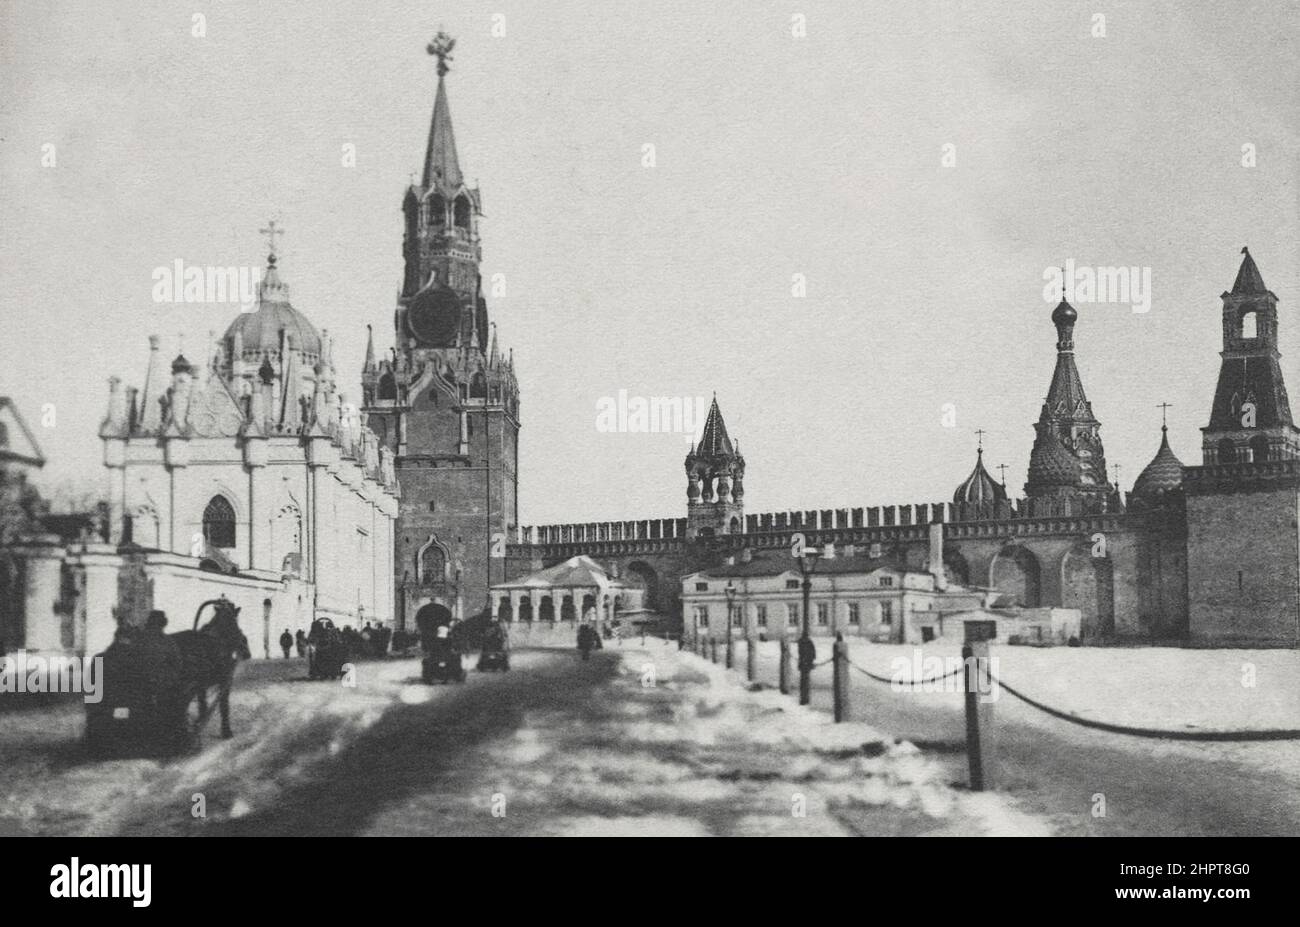 Photo du Couvent de l'Ascension (Couvent de Starodedichy) datant du 19th siècle et porte de Spassky. Empire russe. Couvent de l'Ascension, connu sous le nom de couvent de Starodedichy Banque D'Images